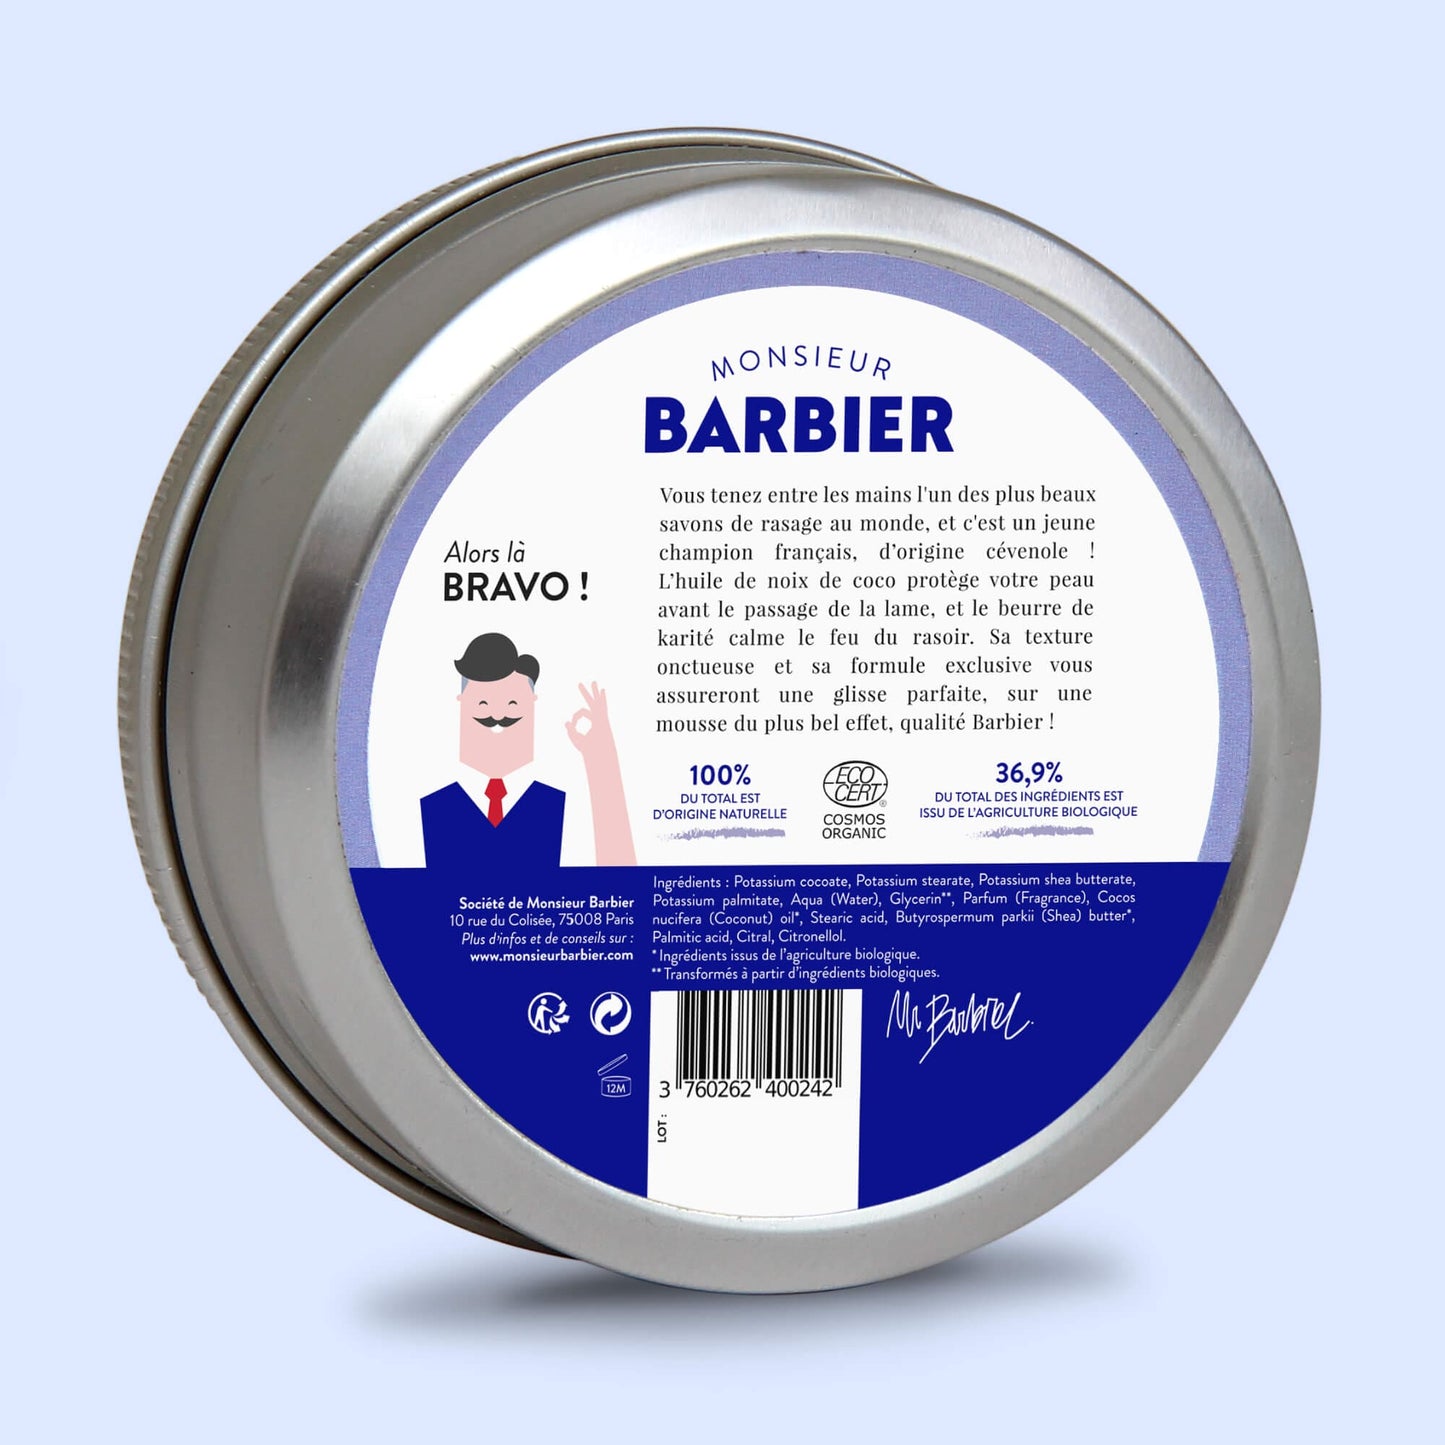 Arrière de la boîte de savon de rasage Monsieur BARBIER BETTER SHAVE, présentant des instructions détaillées, les engagements de la marque et des informations sur les certifications naturelles et biologiques.